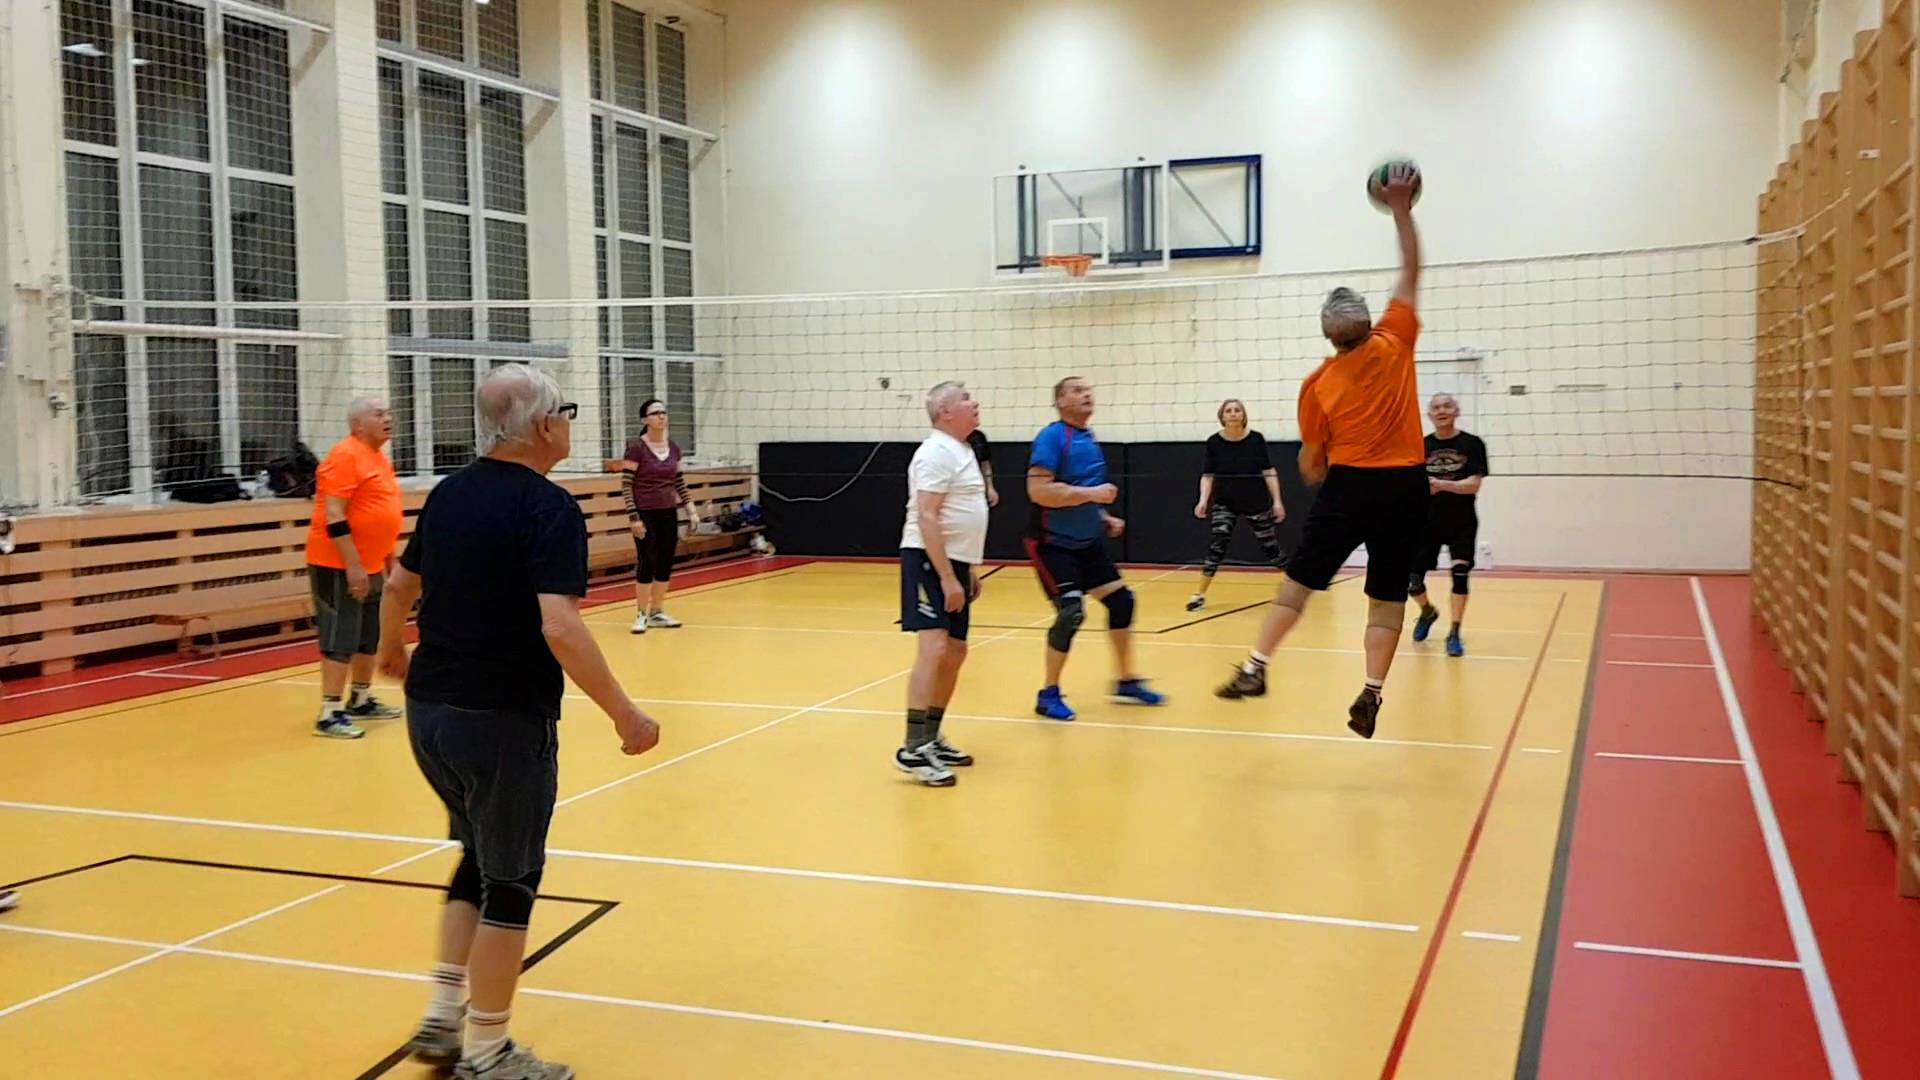 Siatkówka dla seniorów. Uczestnicy zajęć dla seniorów grają w siatkówkę. Zawodnik w pomarańczowej koszulce w wyskoku zbija.